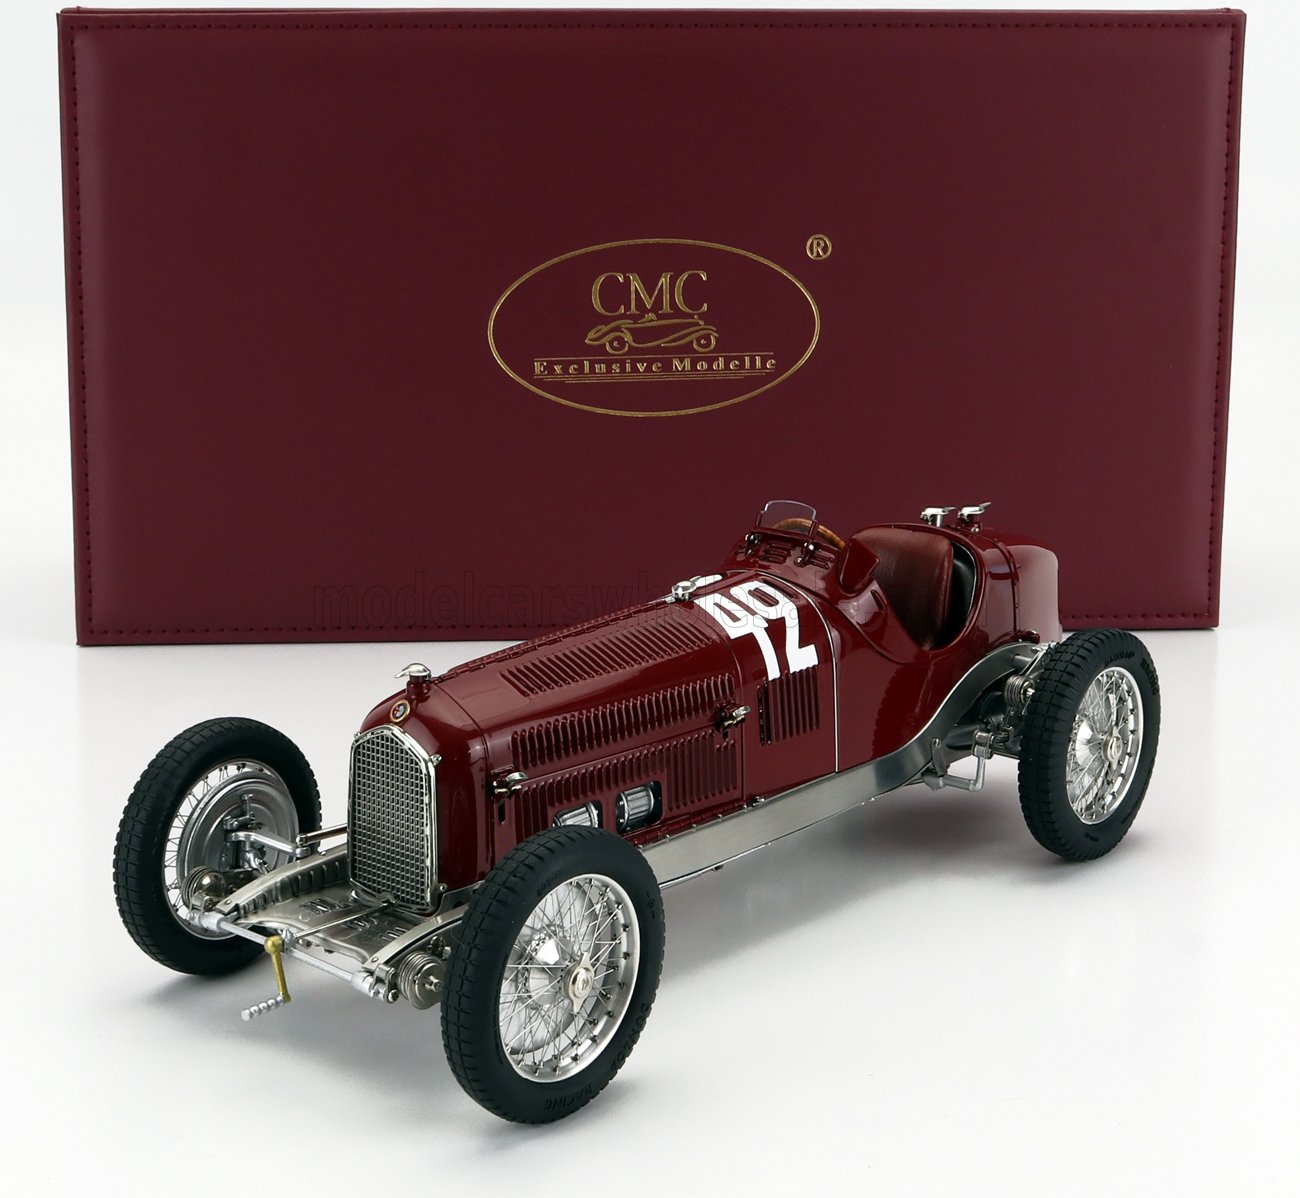 Alfa Romeo P3 #42 CHIRON WINNER GP MARSEILLE 1933